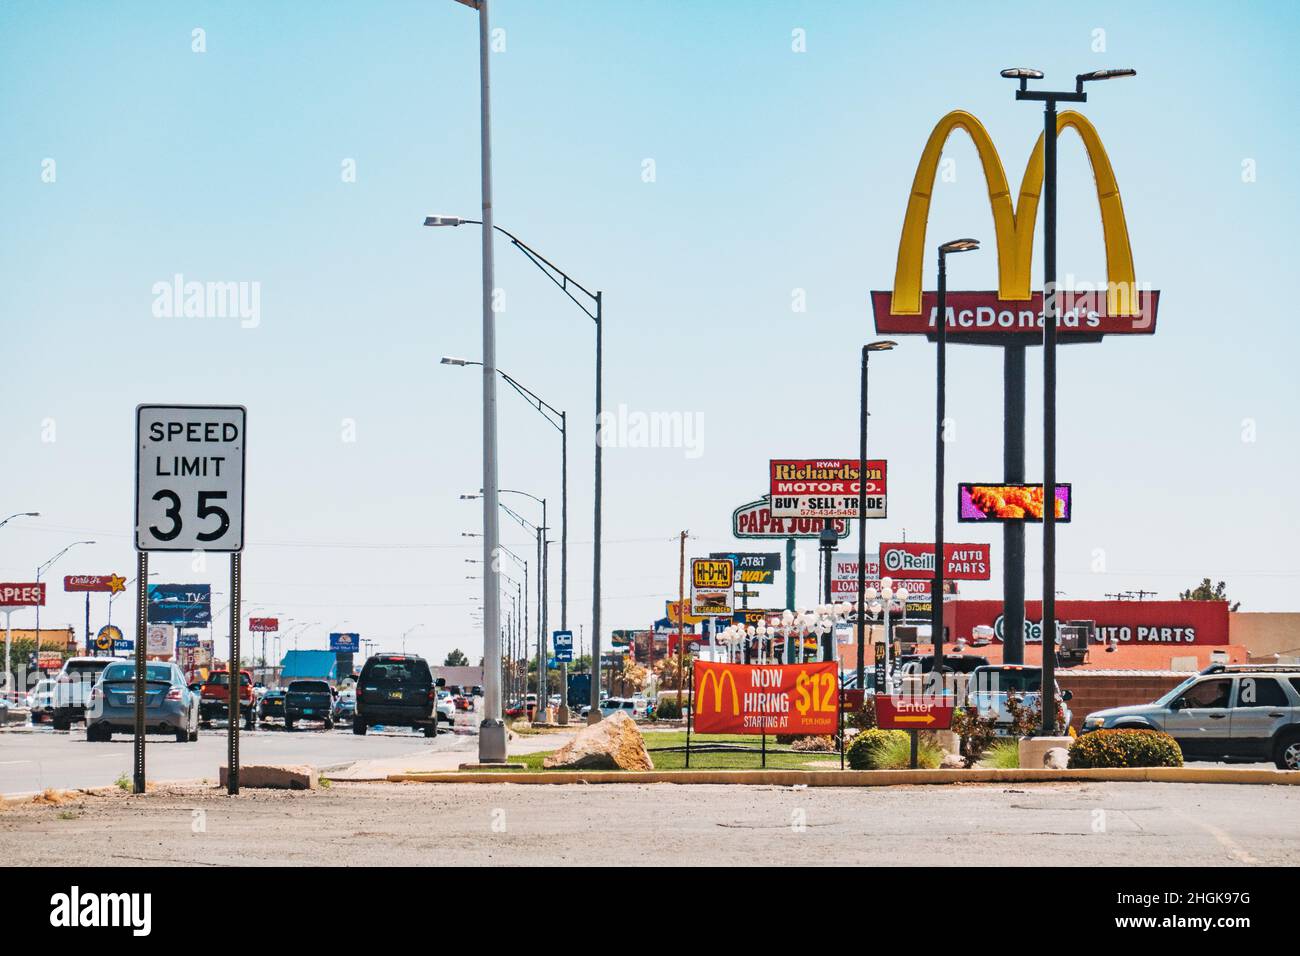 La rue principale était jonchée de panneaux indiquant les restaurants à Alamogordo, au Nouveau-Mexique, aux États-Unis Banque D'Images